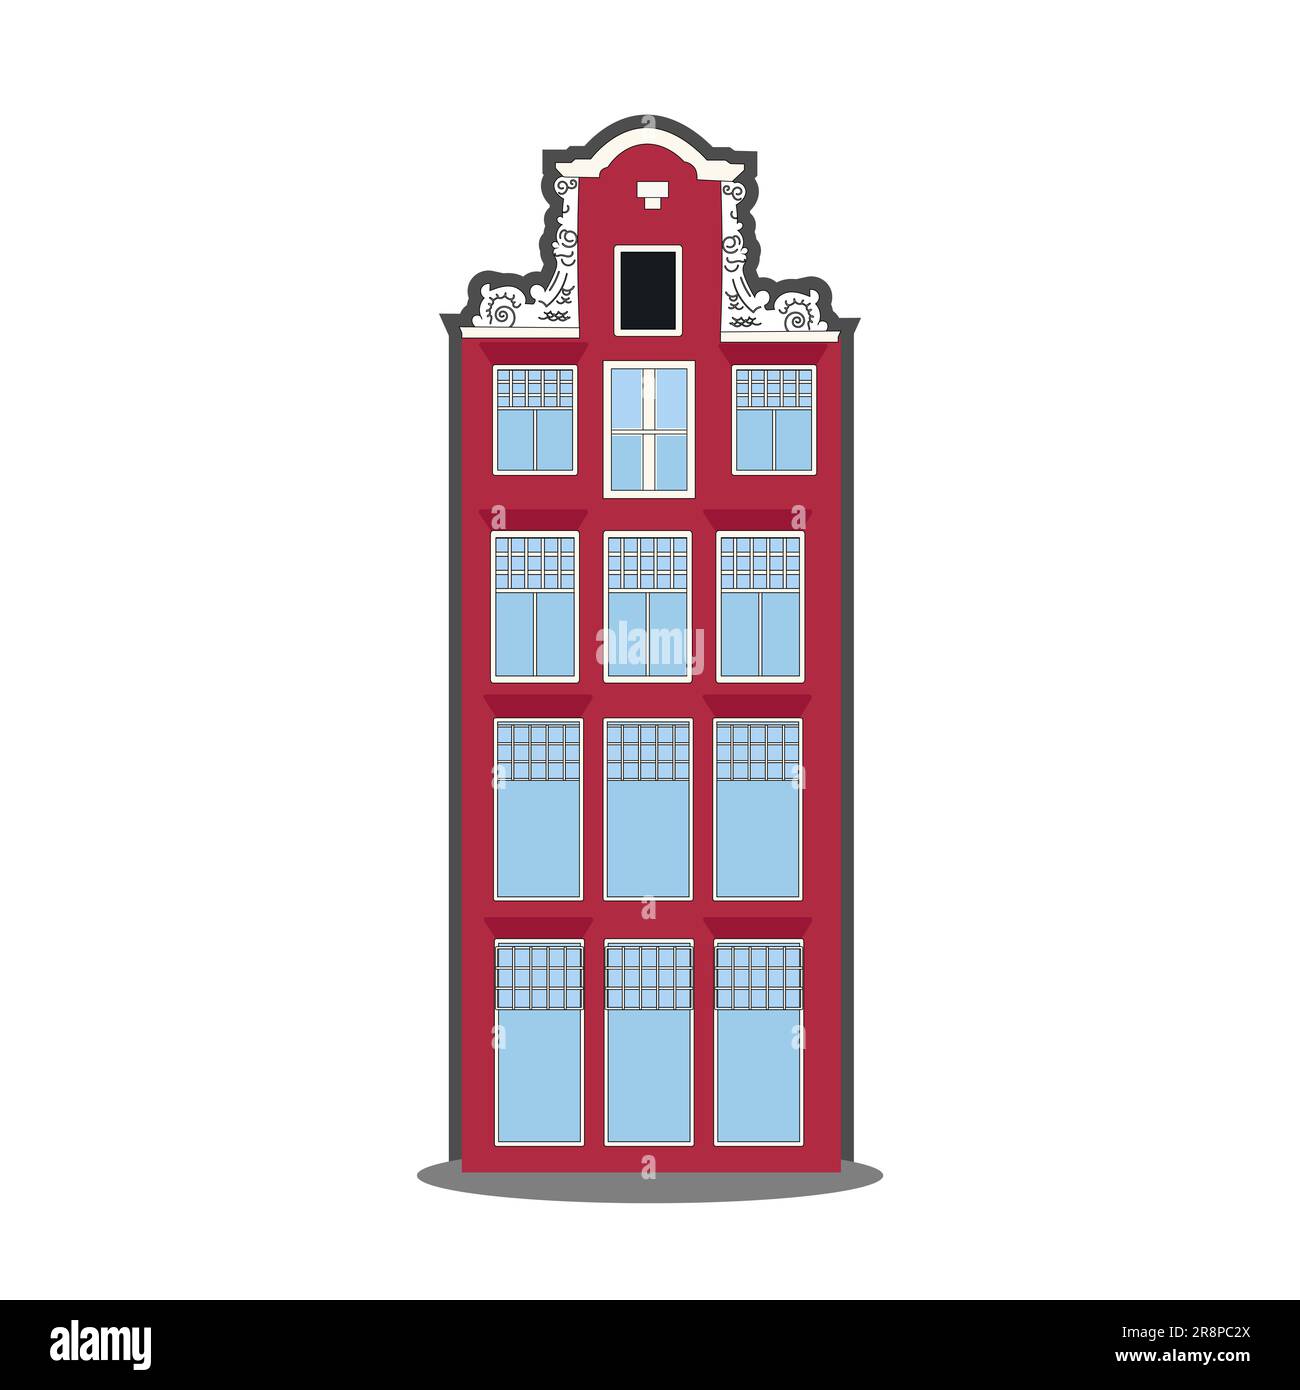 Amsterdam casa antigua en el estilo holandés. Fachada histórica de color rojo con contorno. Arquitectura tradicional de los países Bajos. Ilustración vectorial plano c Ilustración del Vector